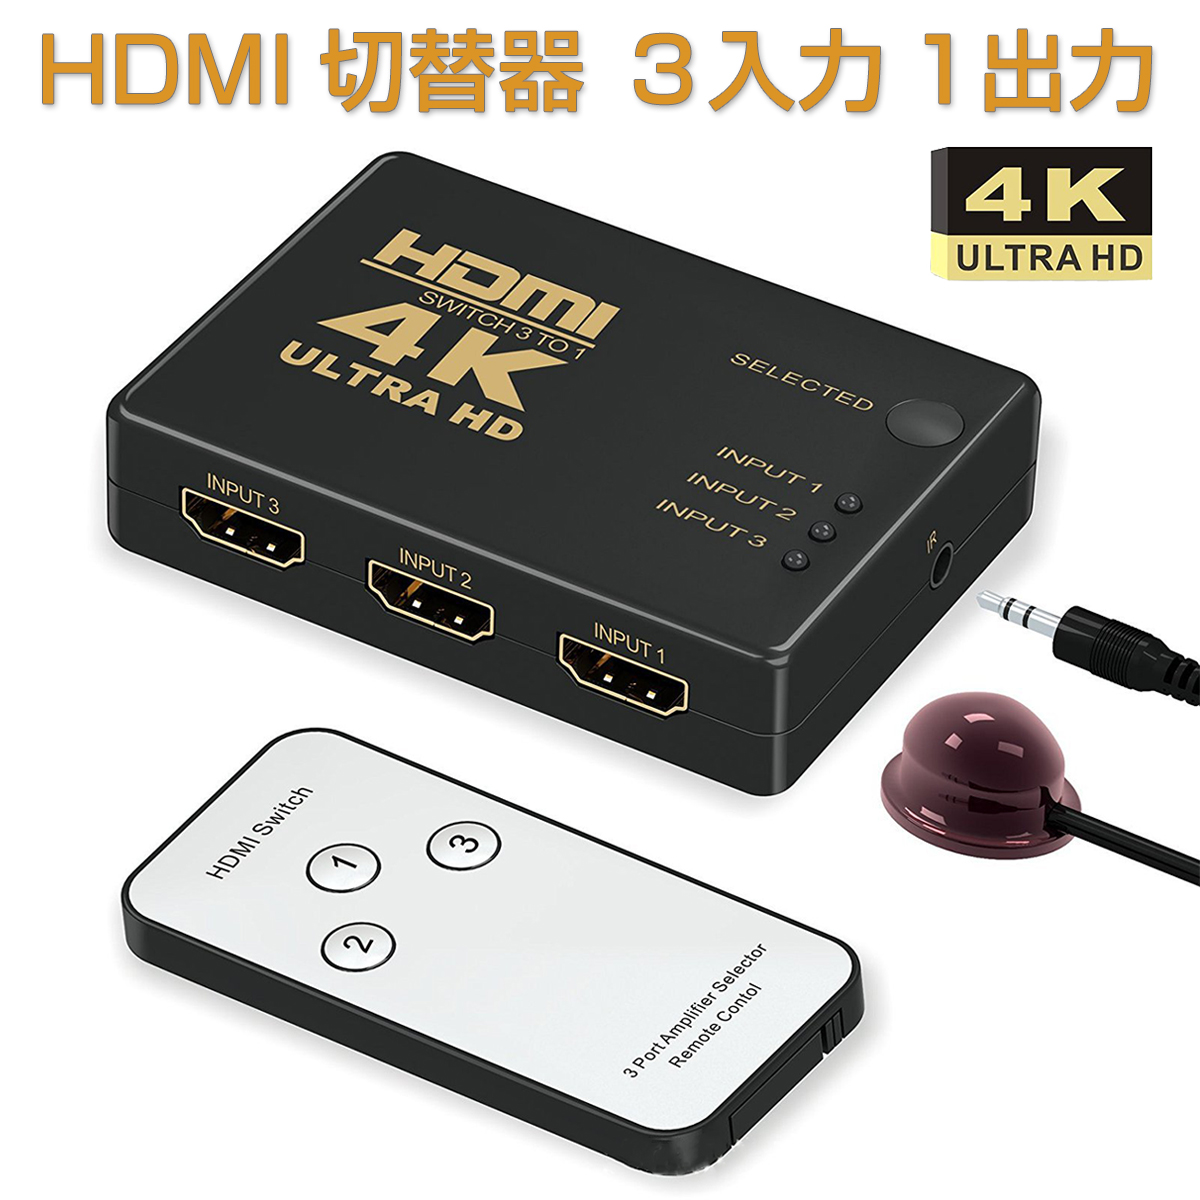 卸売B2B HDMI切替器 3入力1出力 HDMI セレクター 4K 2K FHD対応 自動切り替え 3D映像対応 USB給電ケーブル リモコン付き TV PC Xbox PS4 任天堂スイッチ Fire TV Stick Apple TV プロジェクター等に対応 SDM便送料無料 1ヶ月保証 K&M